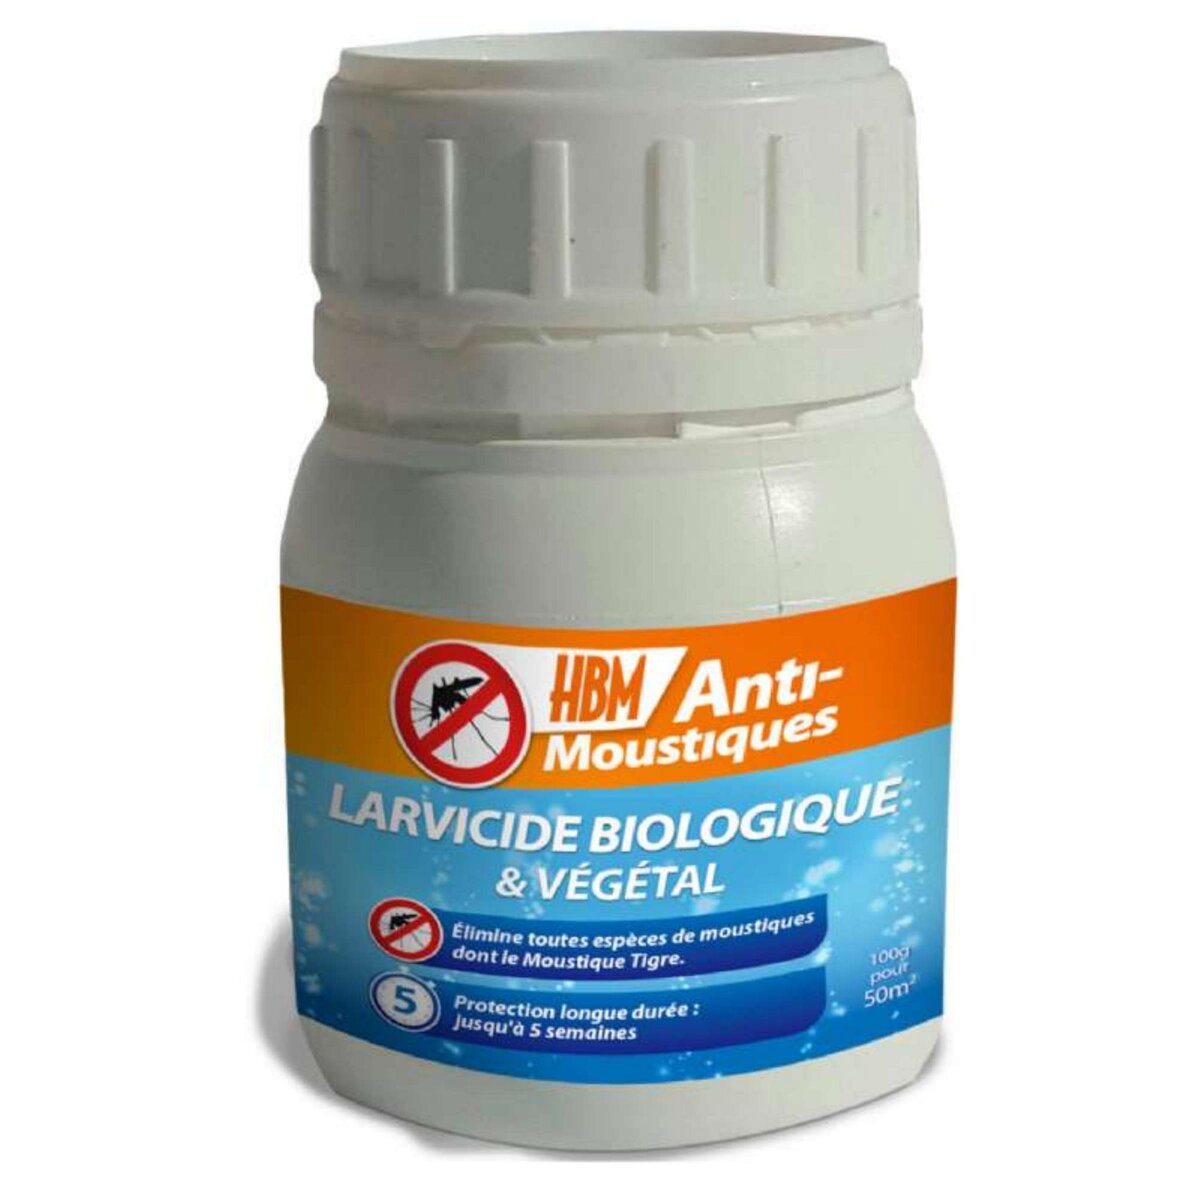 HBM Anti-Moustiques Larvicide biologique anti-moustiques Hbm 250g